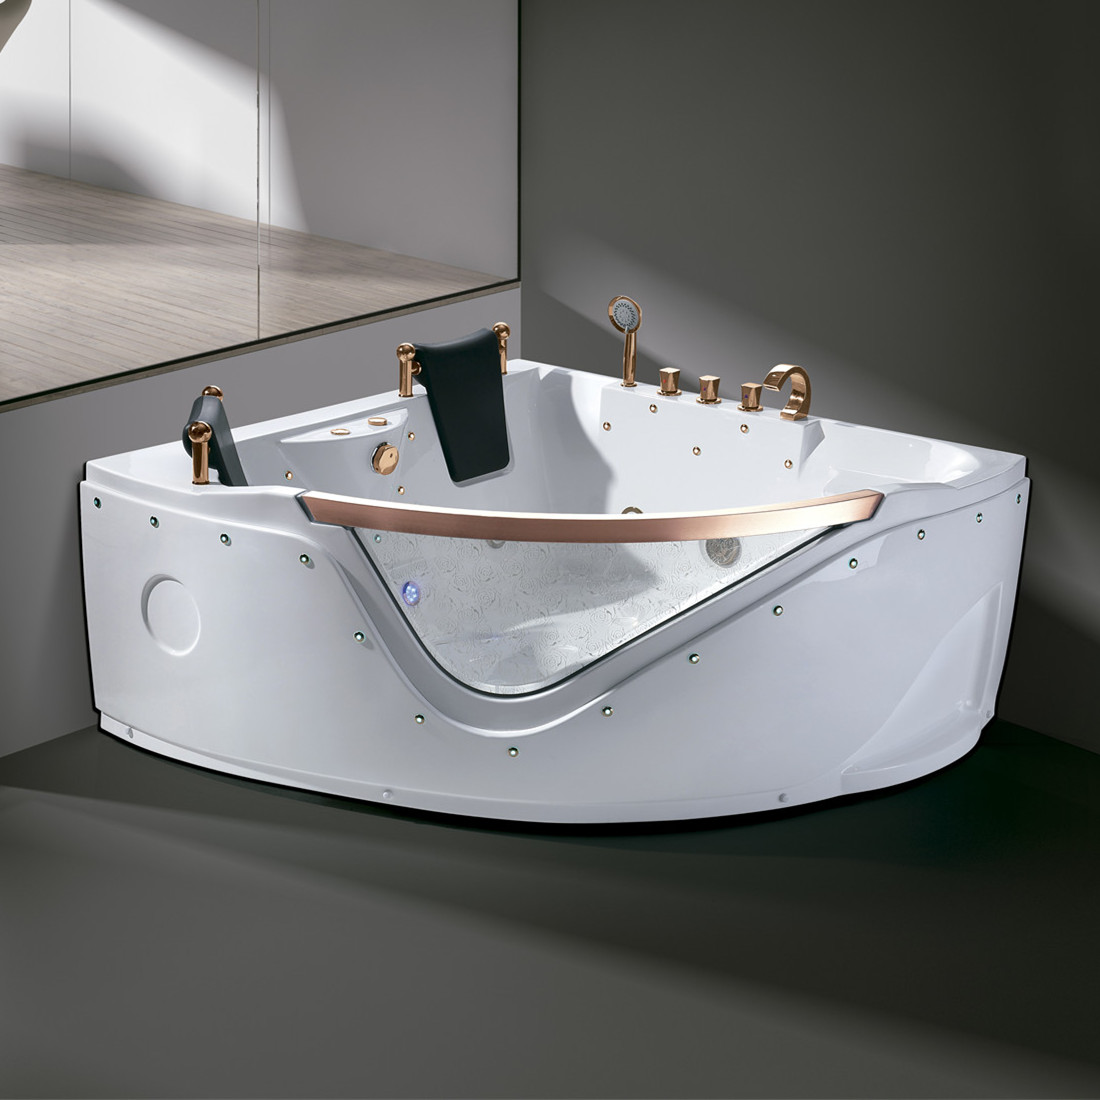 乐可意酒店家用亚克力浴缸1.5米扇形冲浪按摩泡泡浴恒温泡澡盆